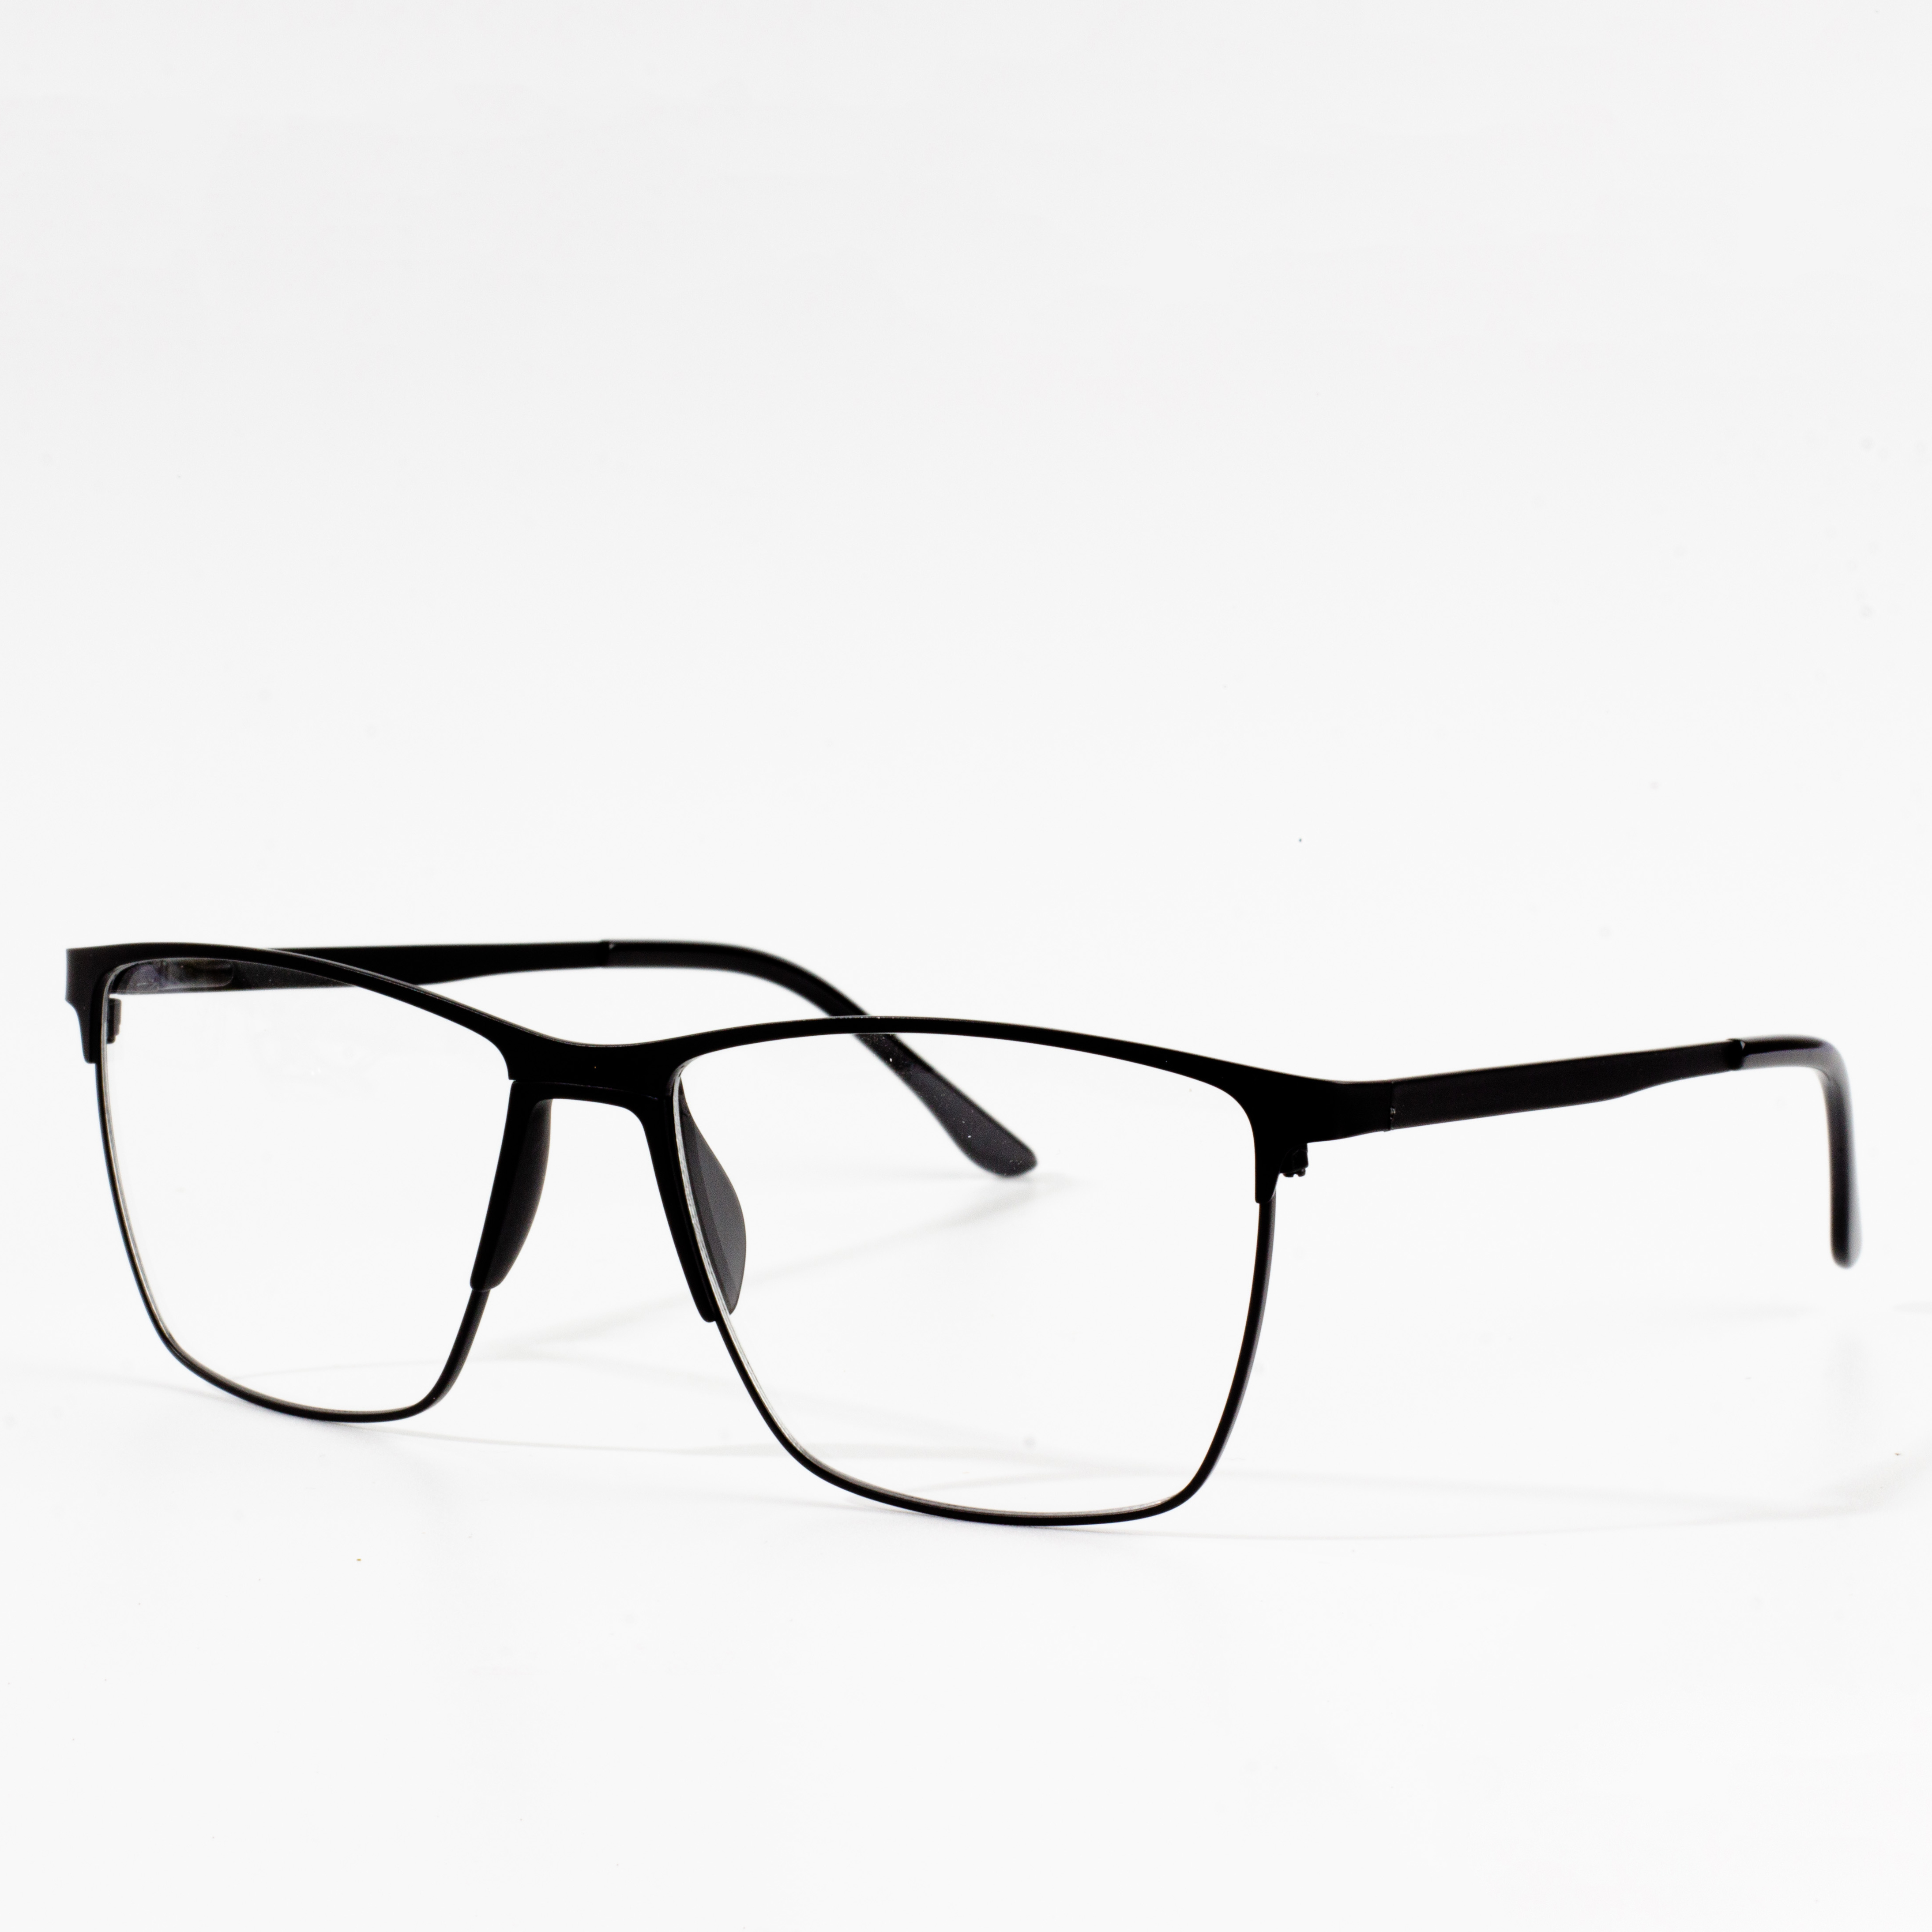 metal frames glasses